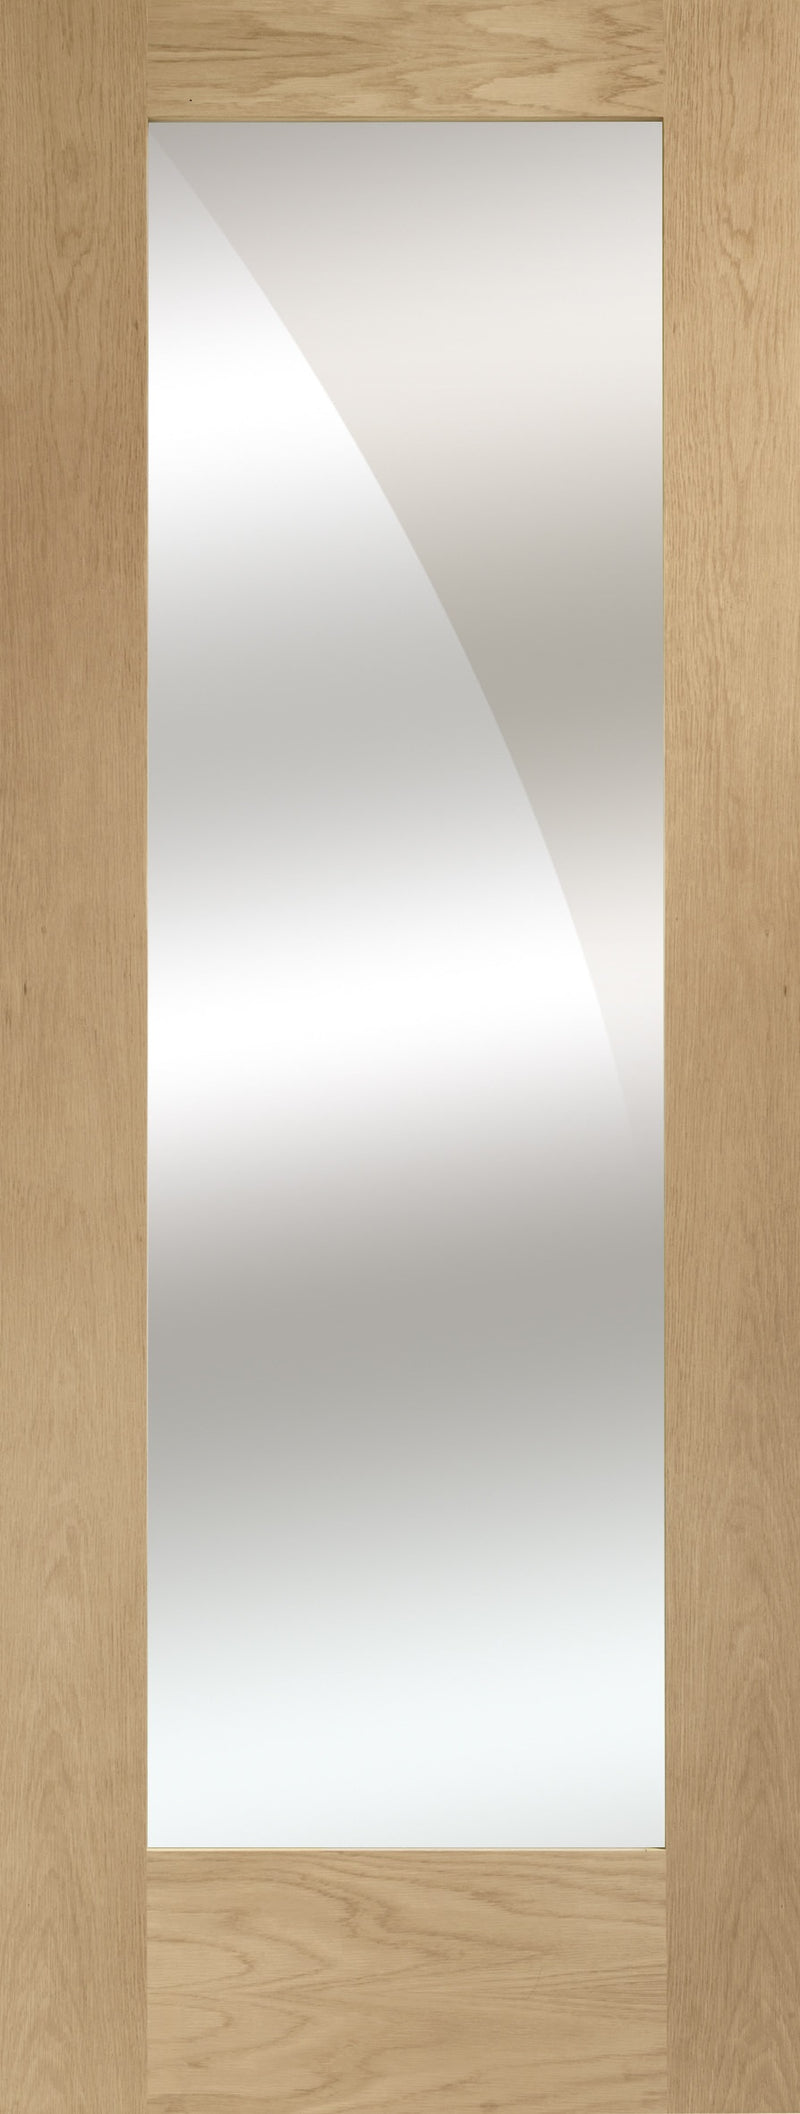 Pattern 10 internal oak mirror door.